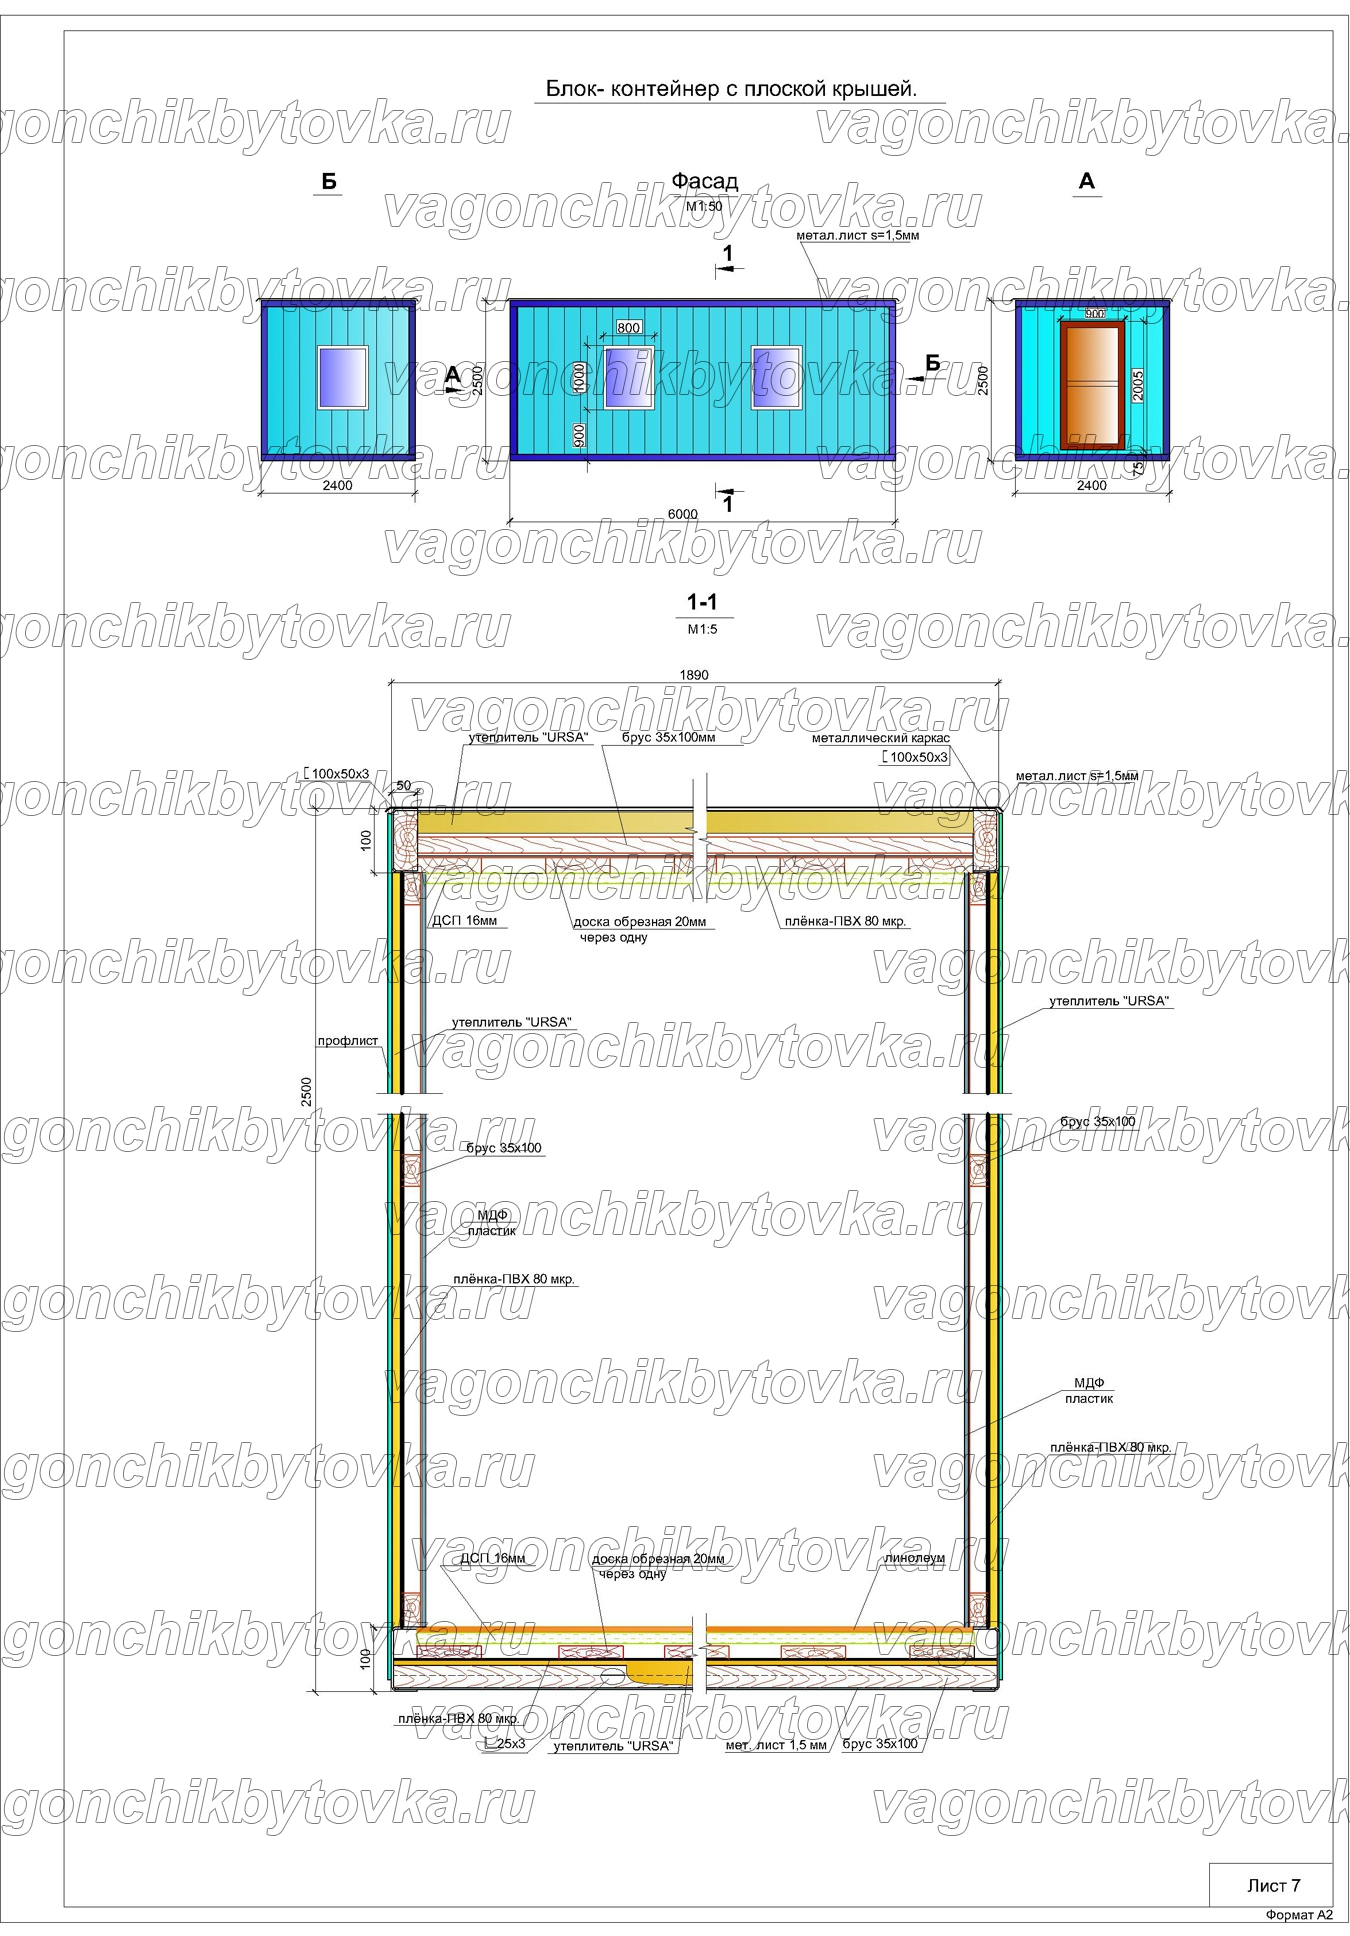 Схема для блок-контейнера с плоской крышей